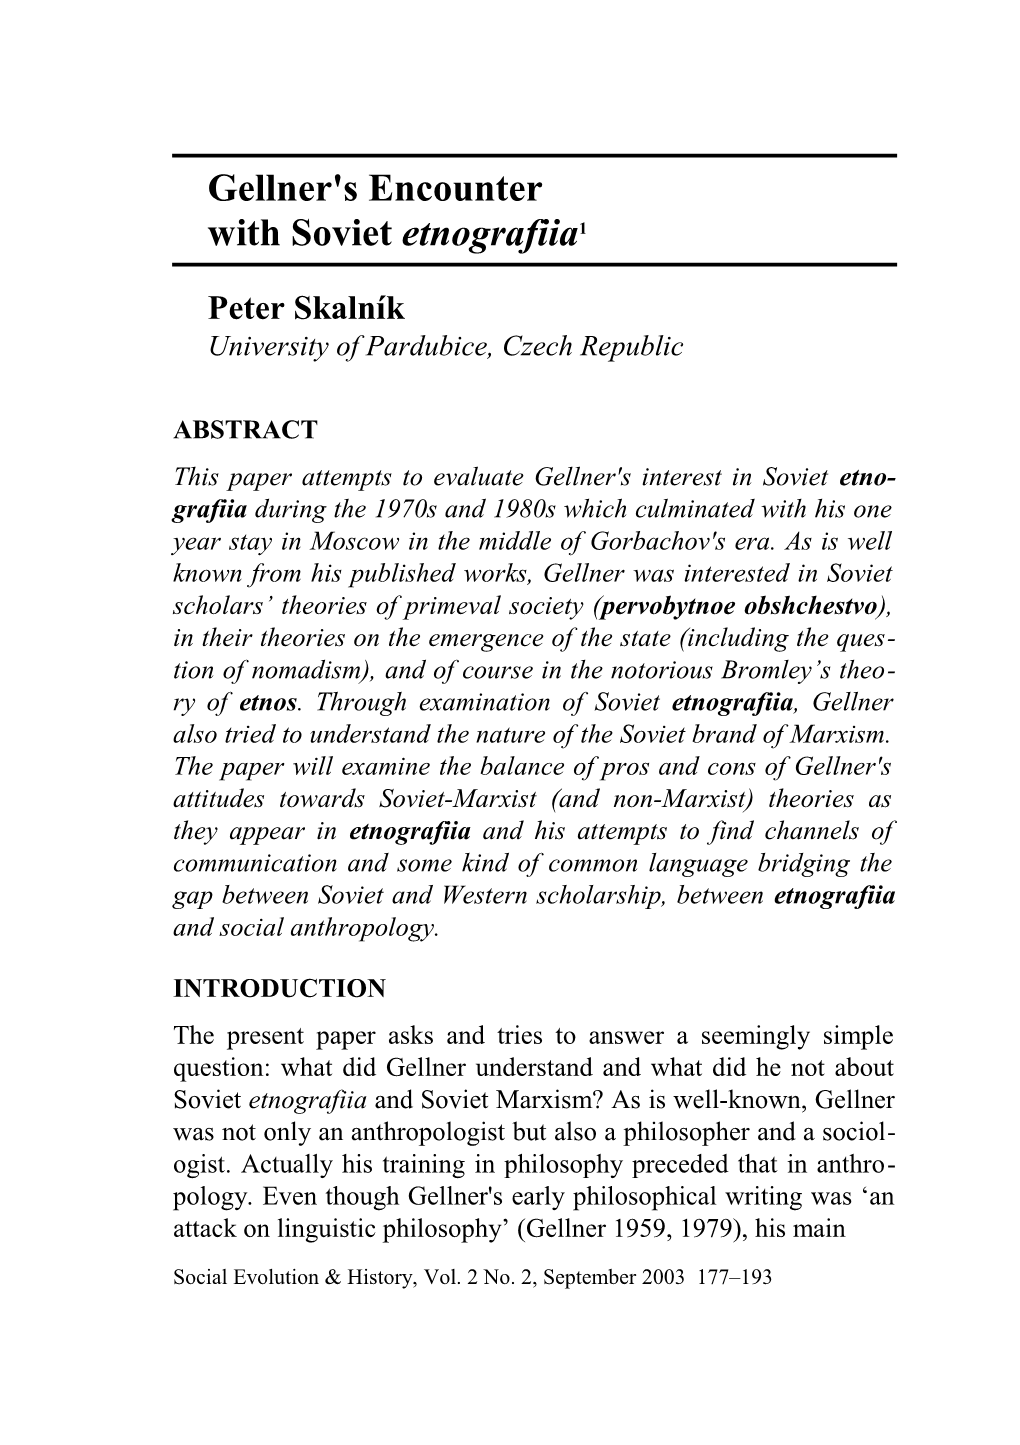 Skalnik / Gellner's Encounter with Soviet Etnografiia